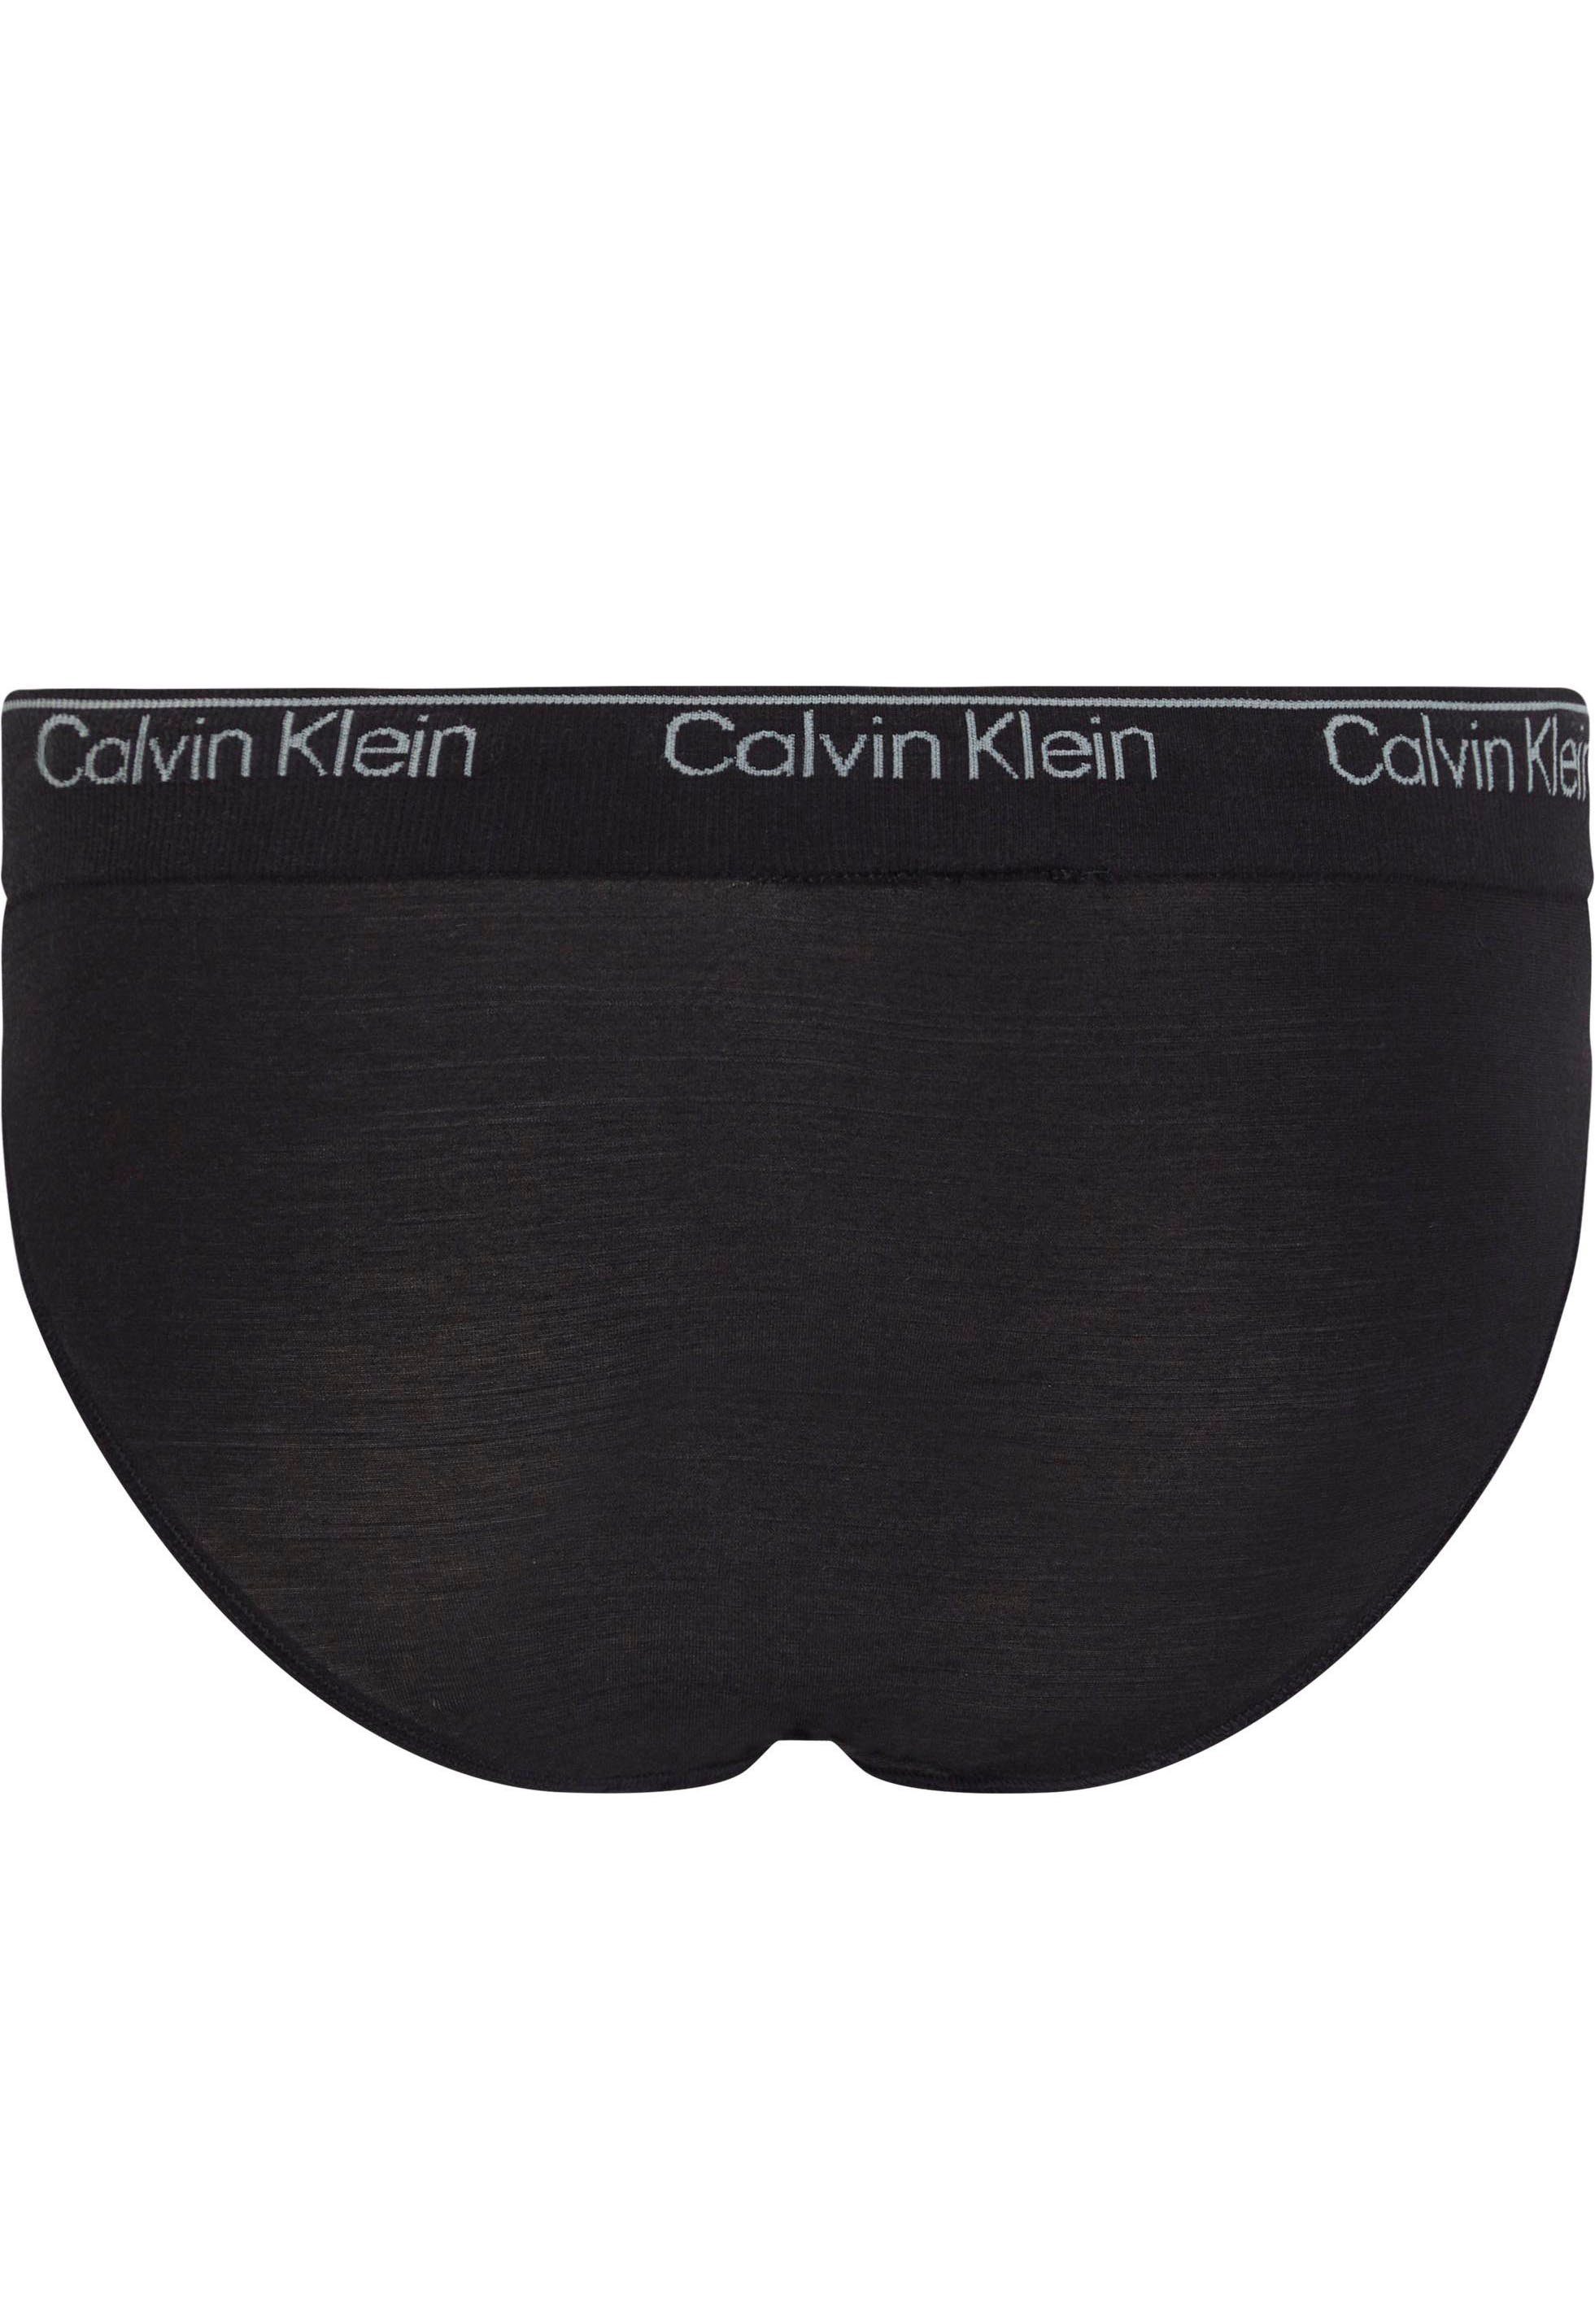 Calvin Klein Underwear Bikinislip Bund mit schwarz CK-Logo BIKINI am